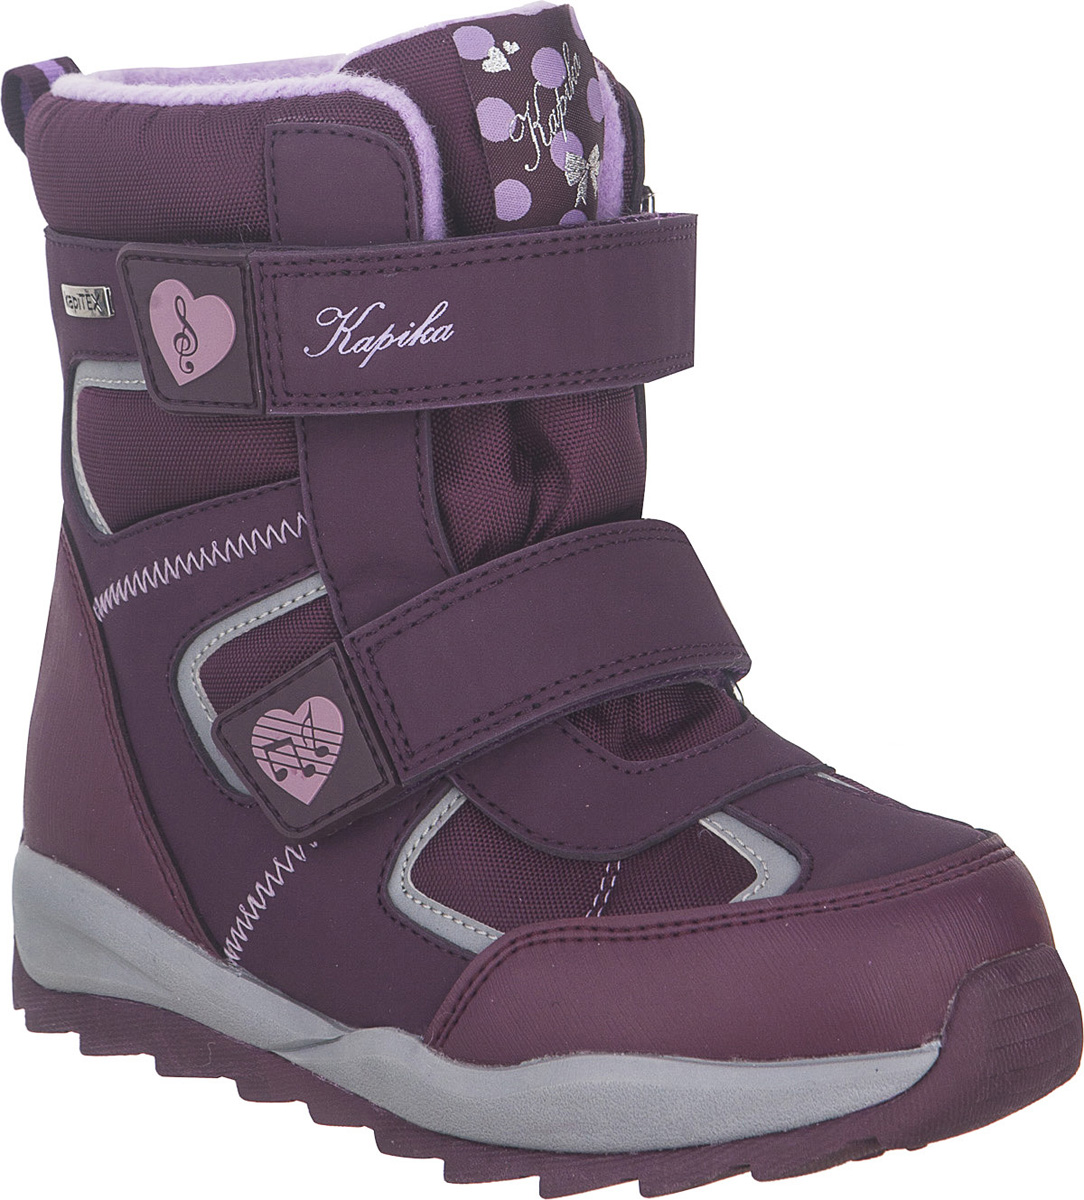 Ботинки для девочки Kapika KapiTEX, цвет: фиолетовый. 43214-1. Размер 32